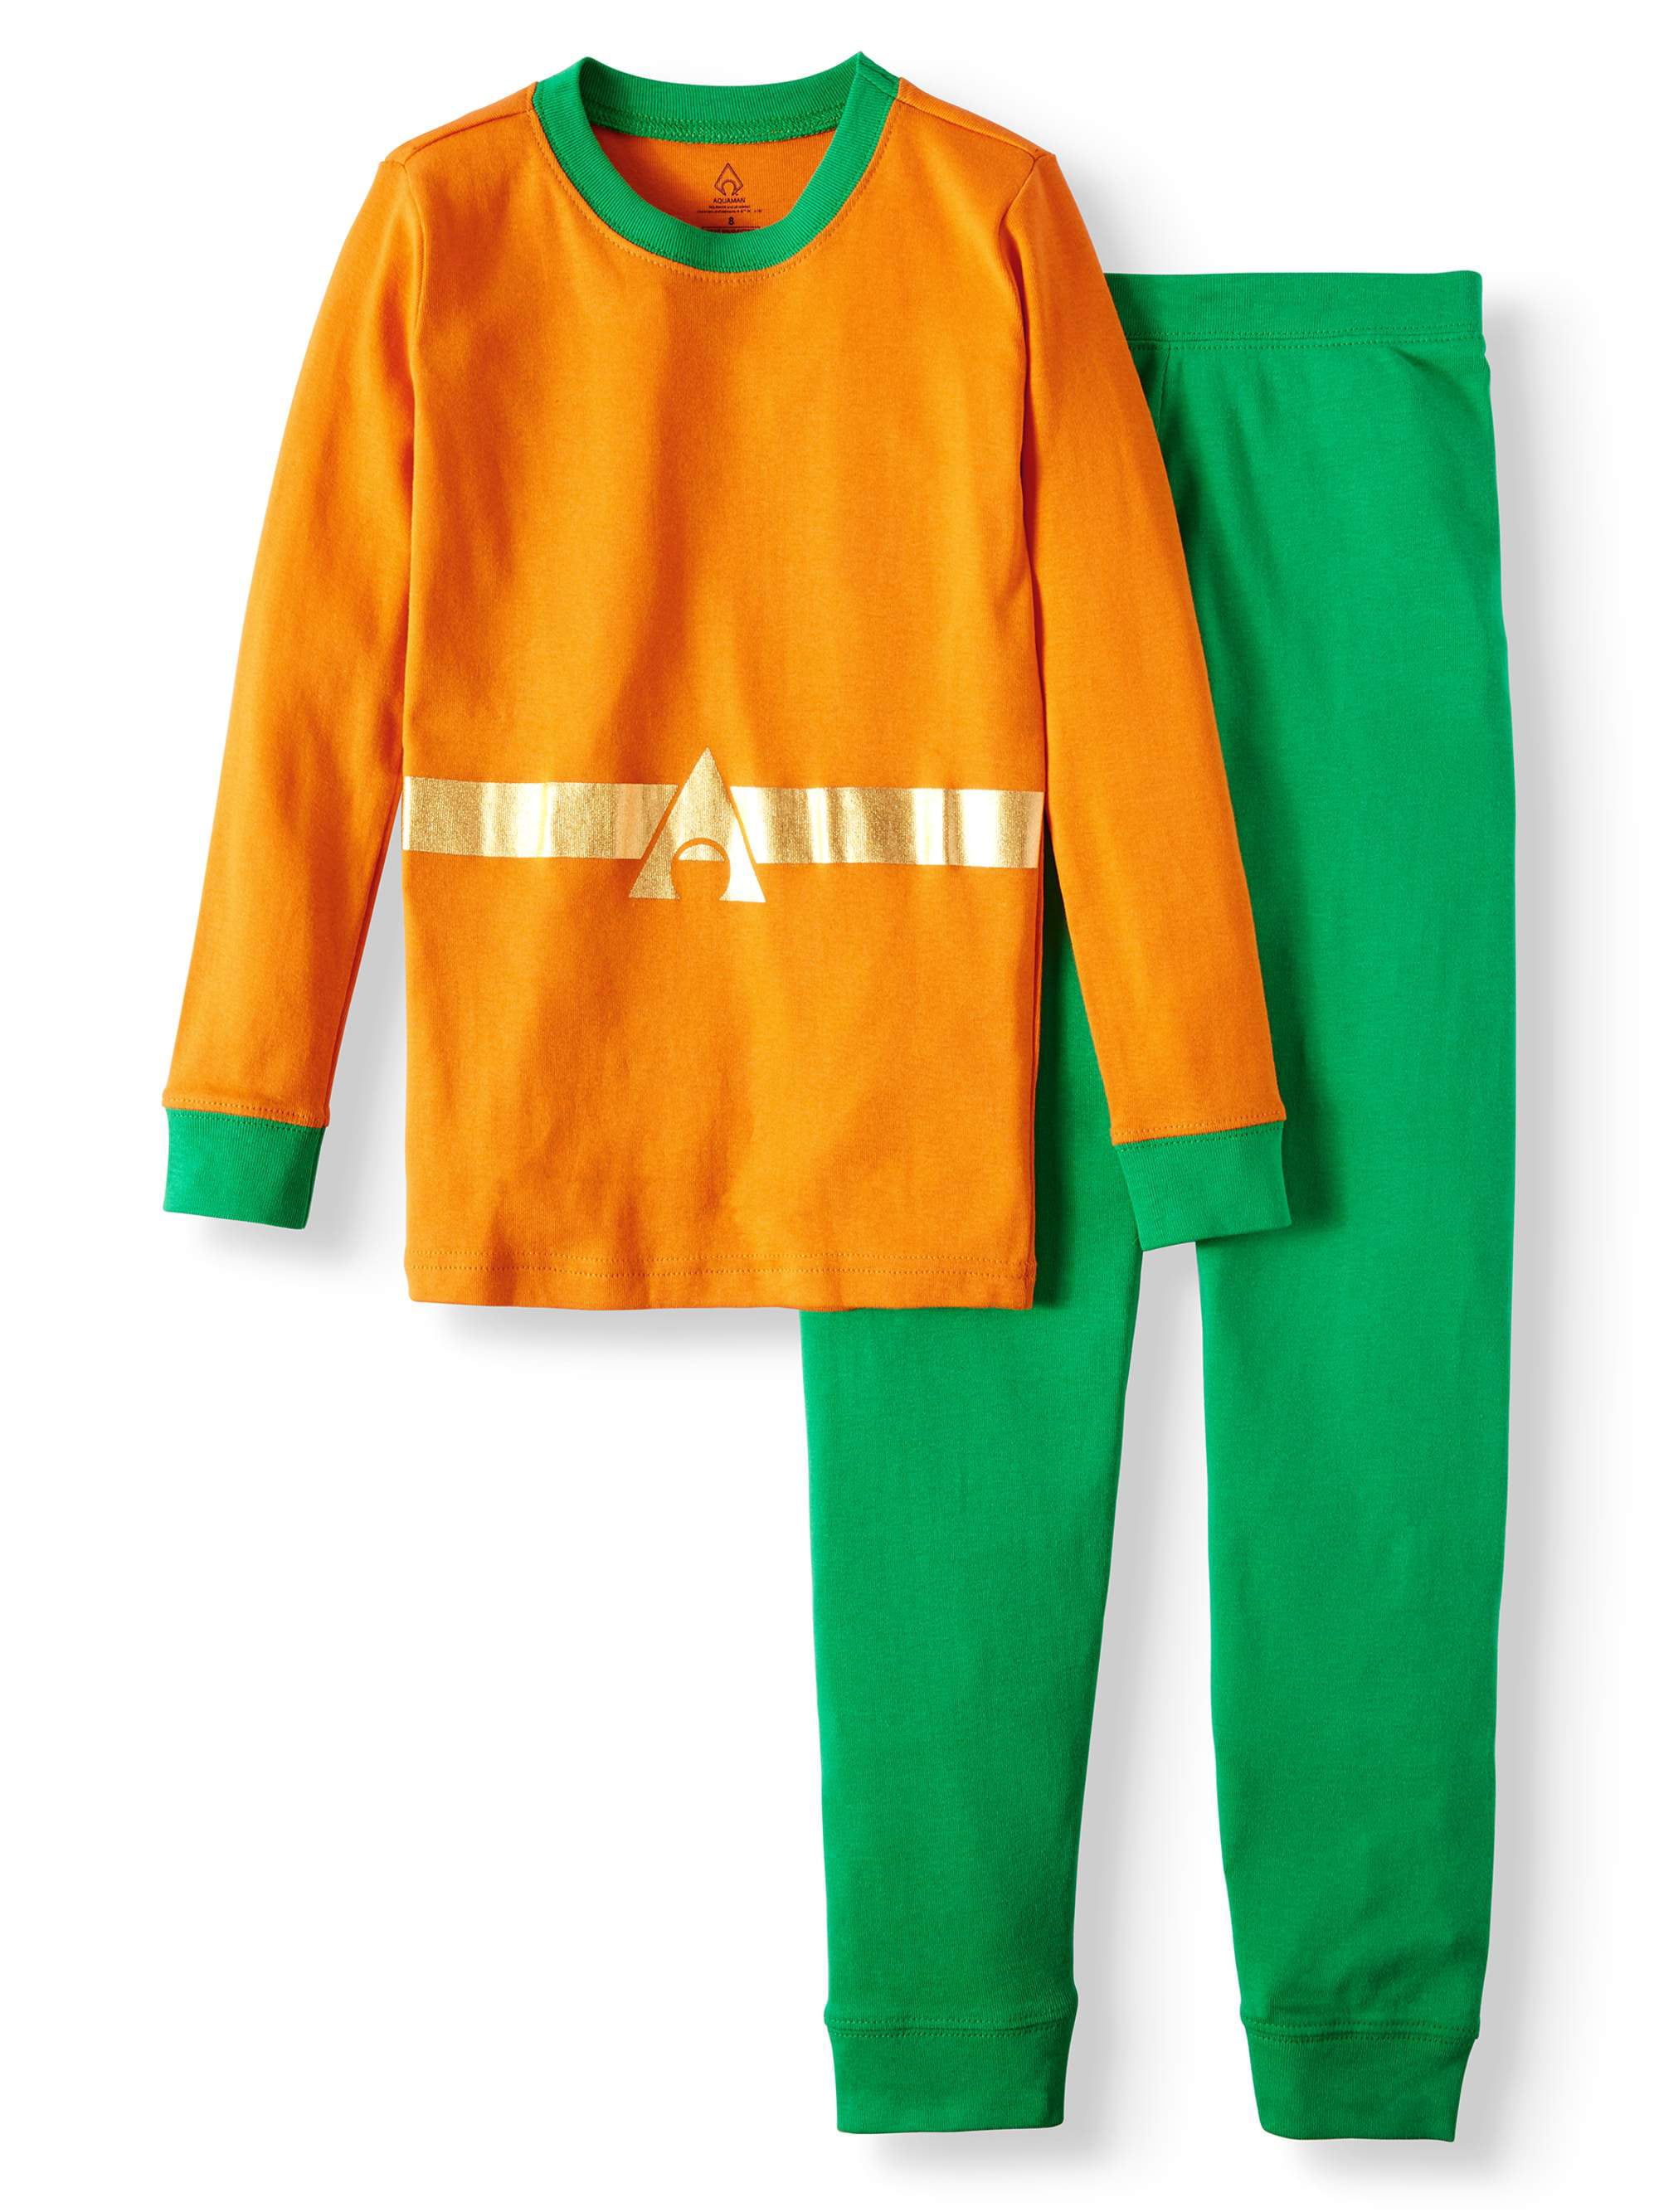 Details about   Justice League Boys Aquaman Cotton Costume Pajama Set 